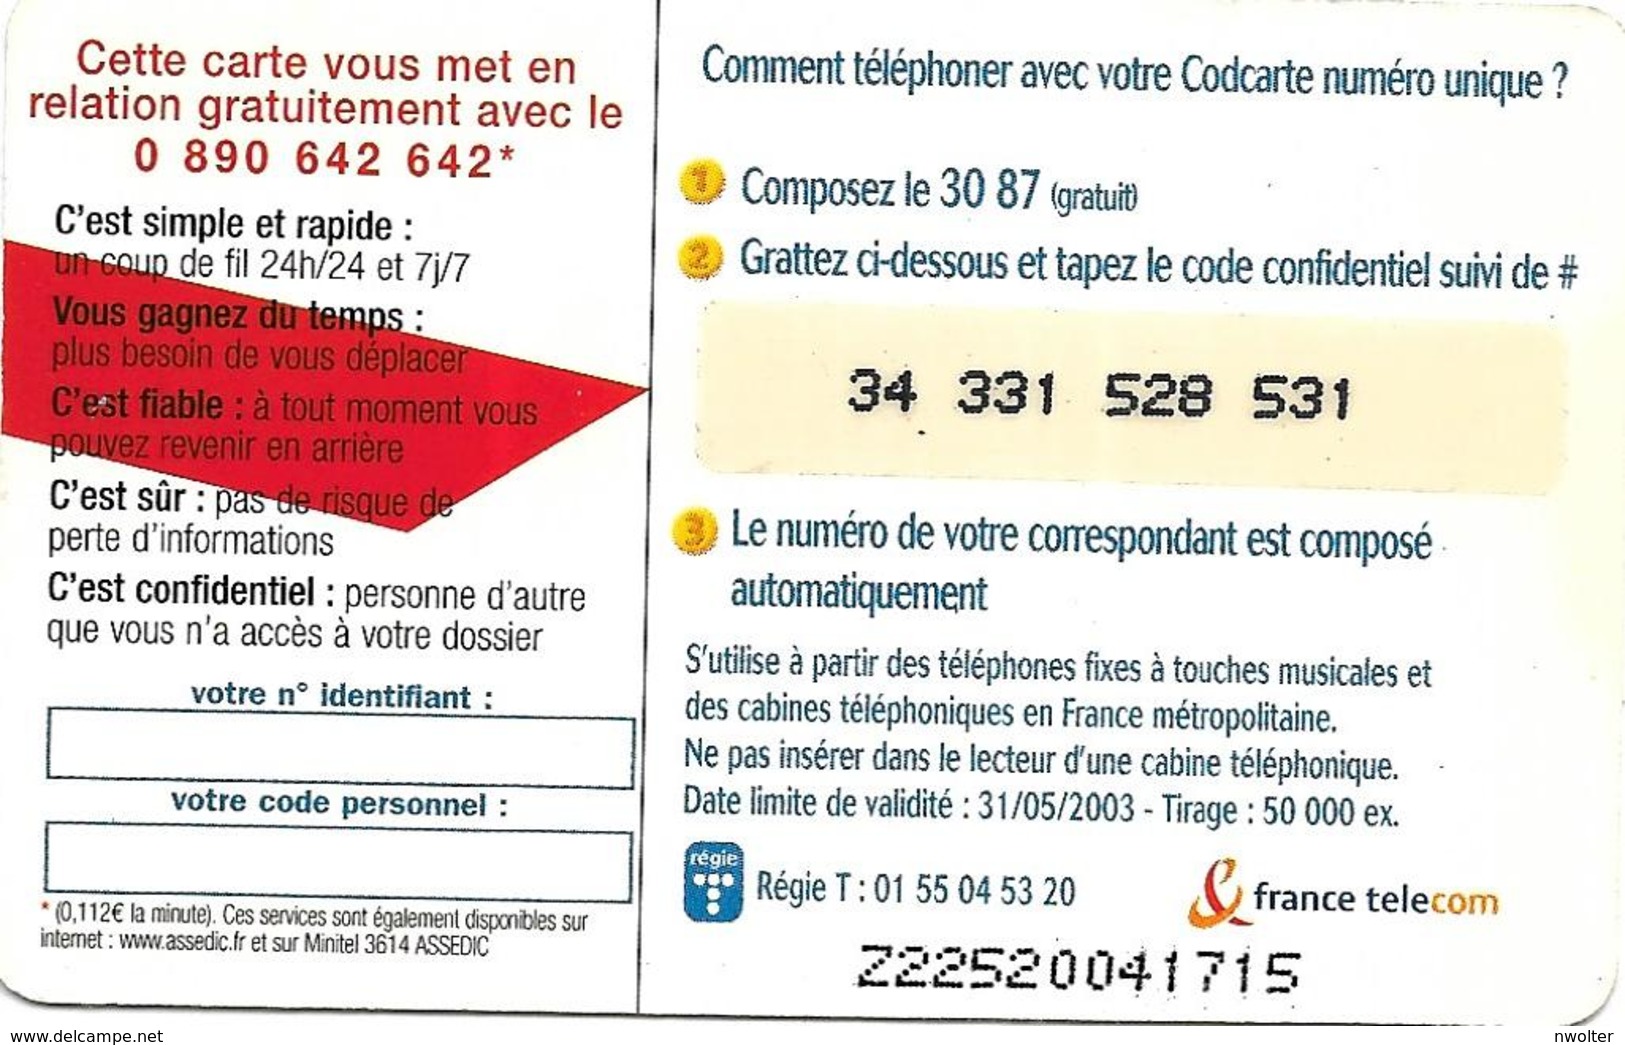 @+ Codcarte France Télécom - Unidialog Paris - 10min - Z22520041715 - Tickets FT